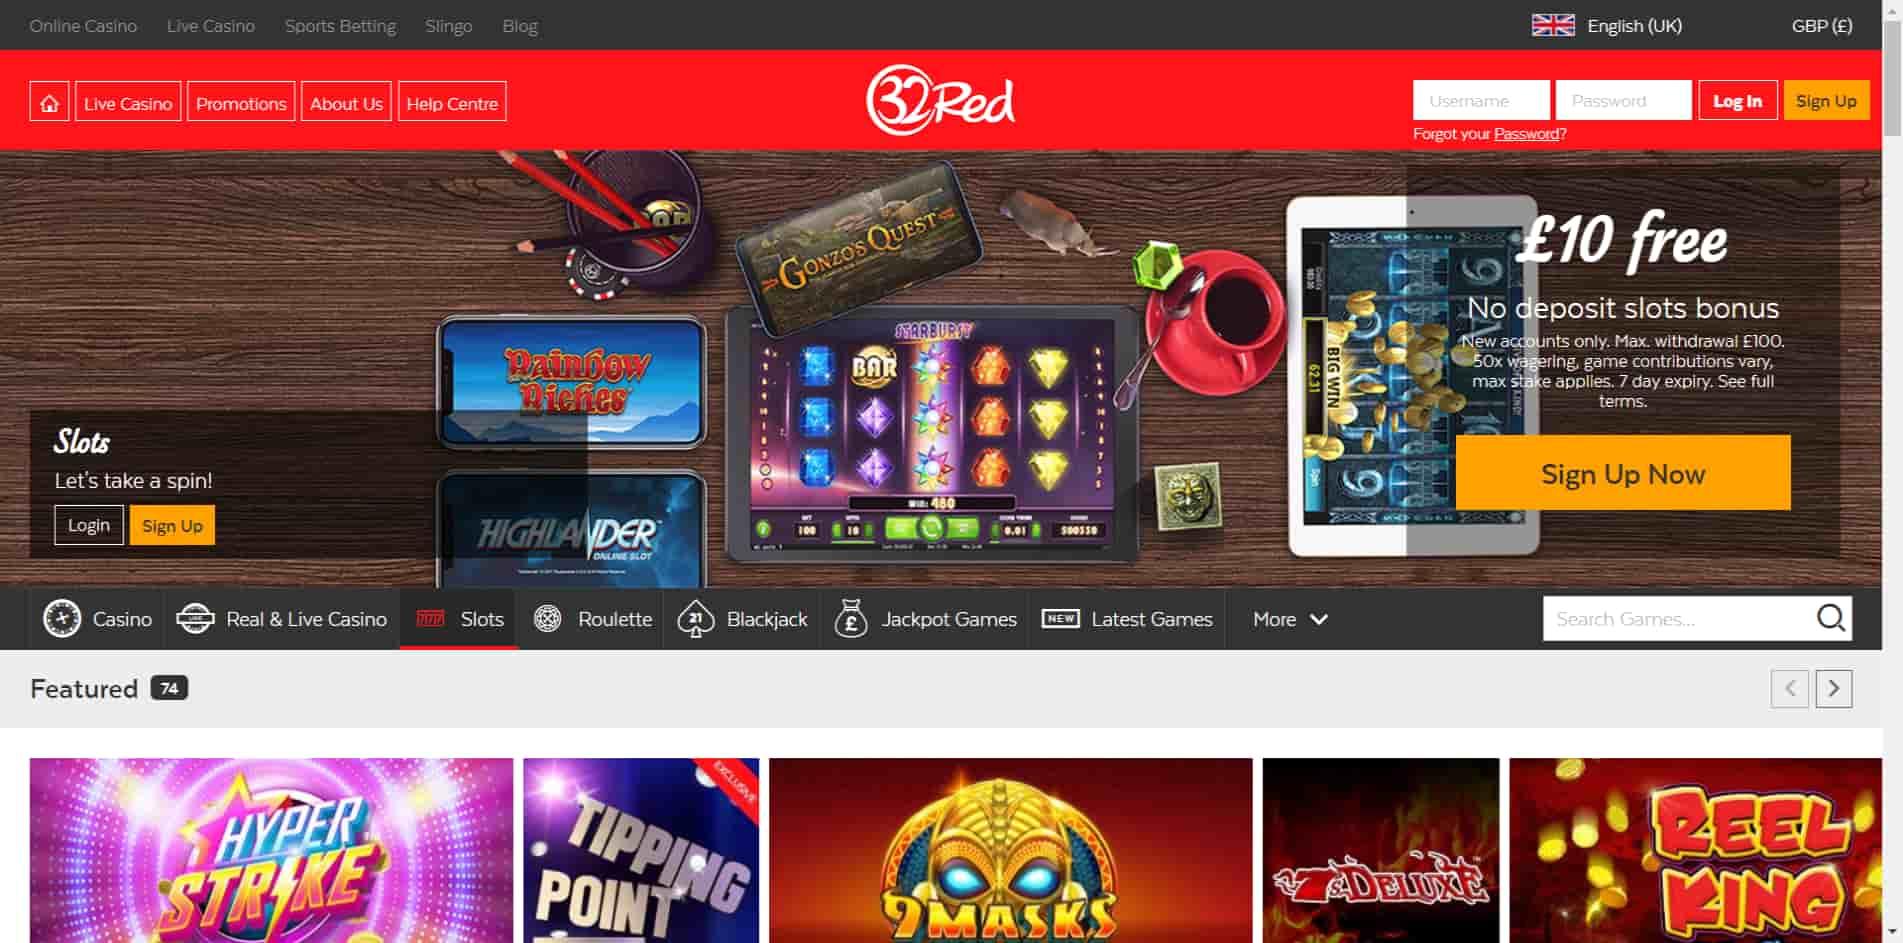 32Red casino homepage